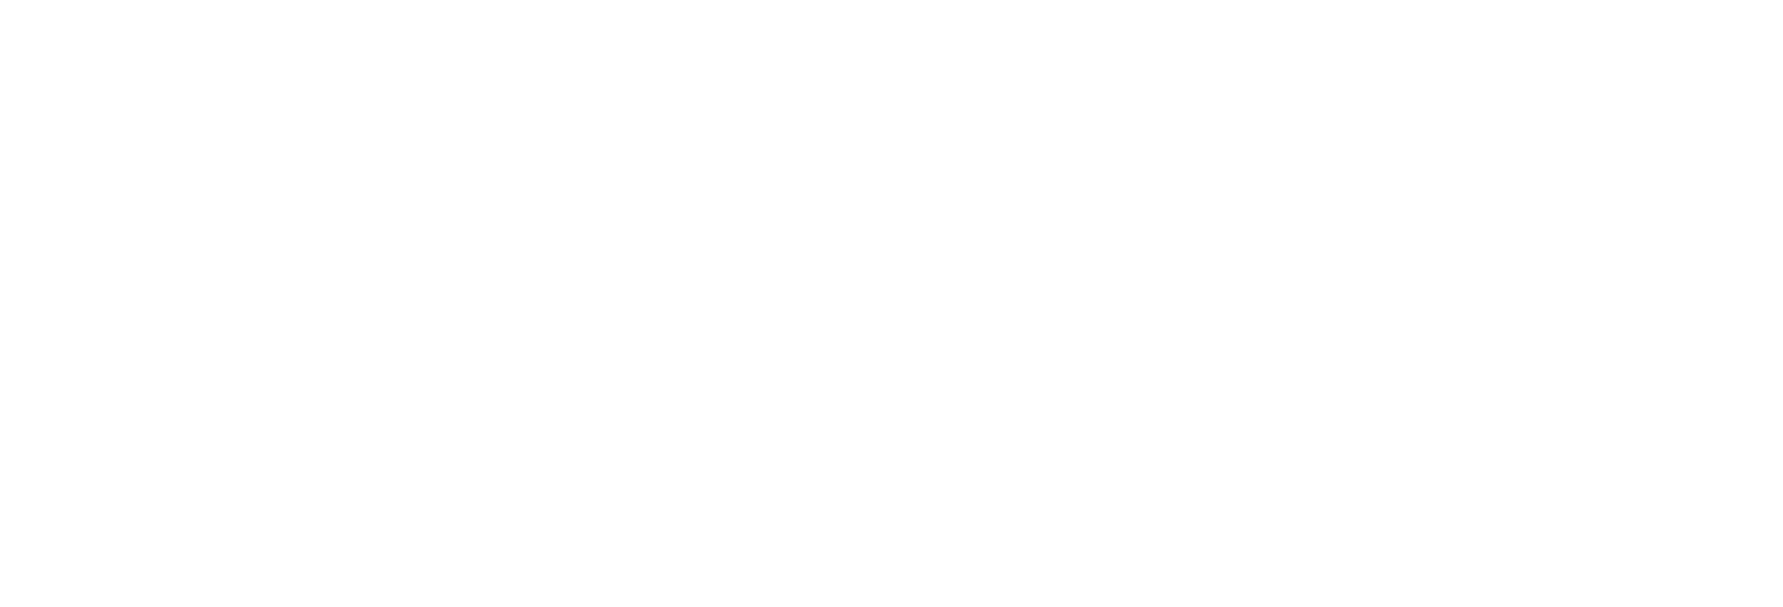 Ministerio de Educación y Cultura - Declarado de interés ministerial